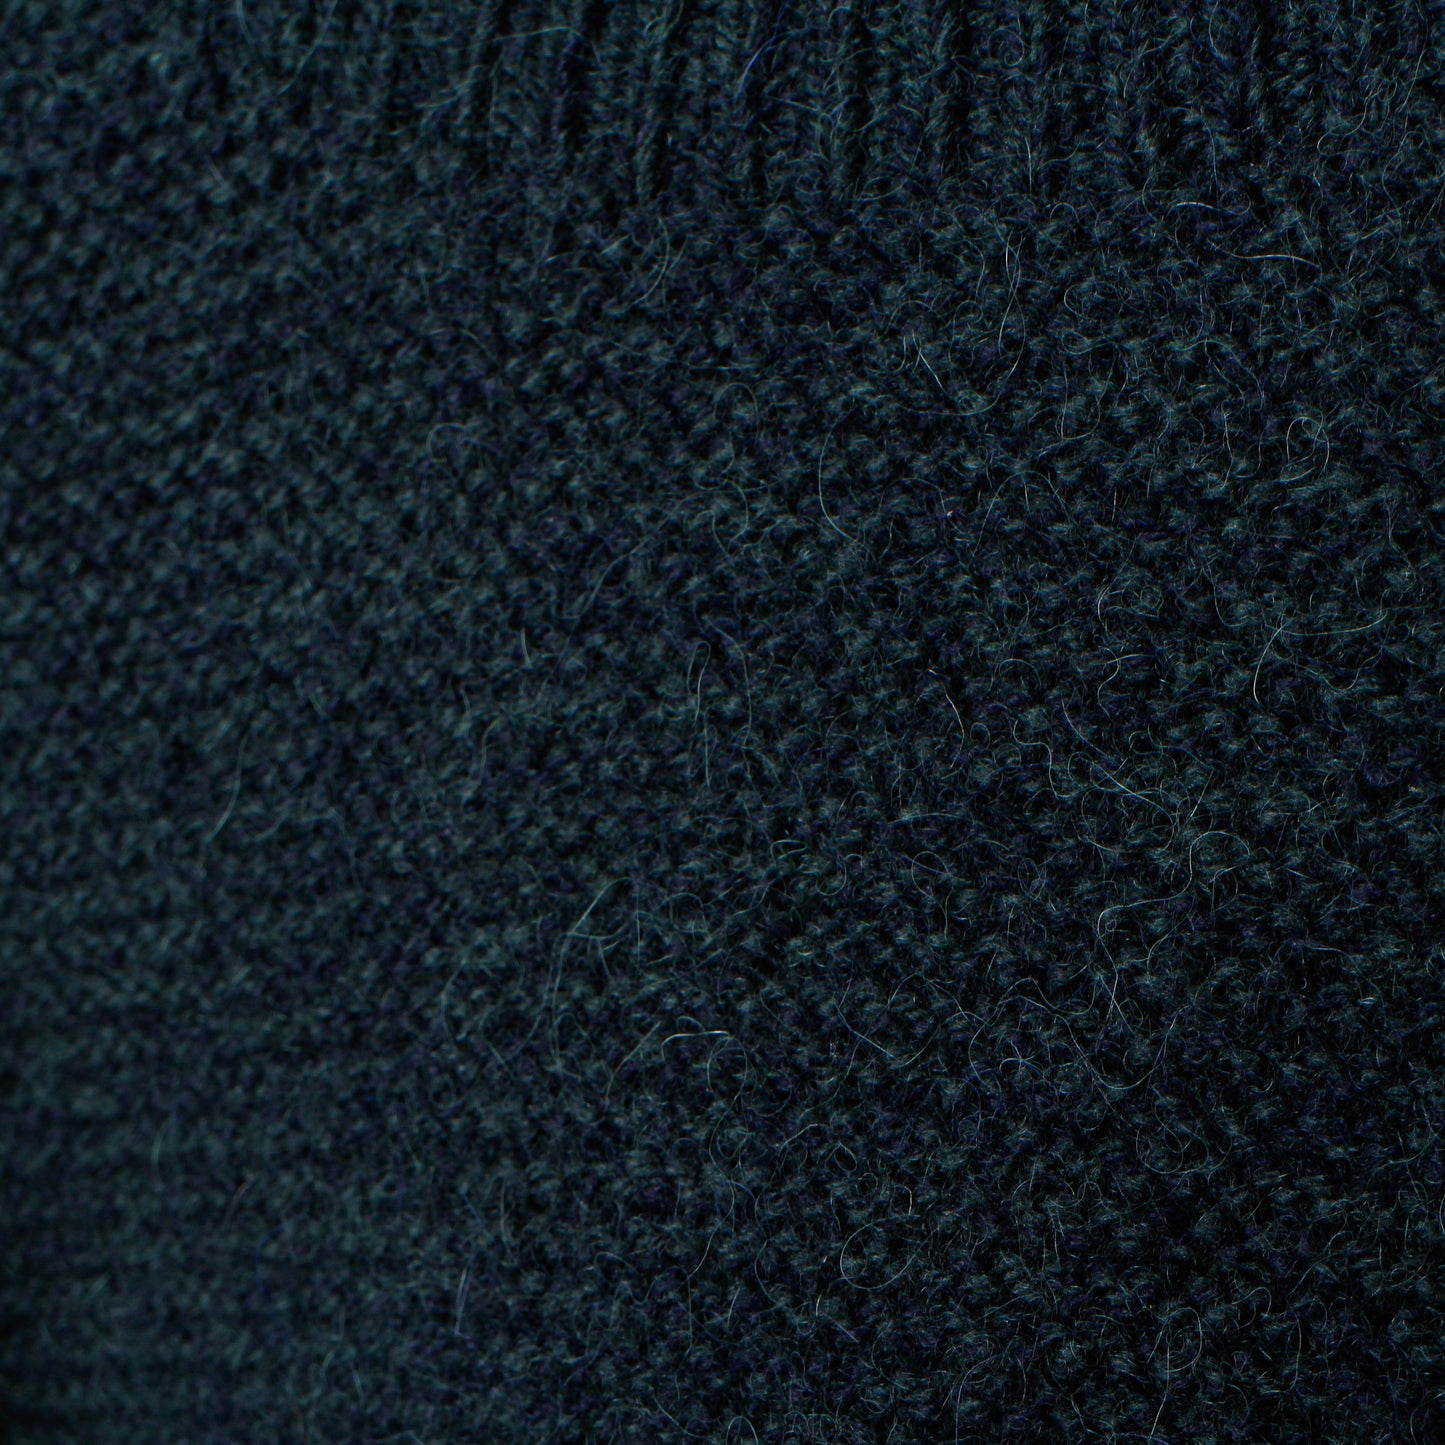 アルパカウールセーター/紺緑